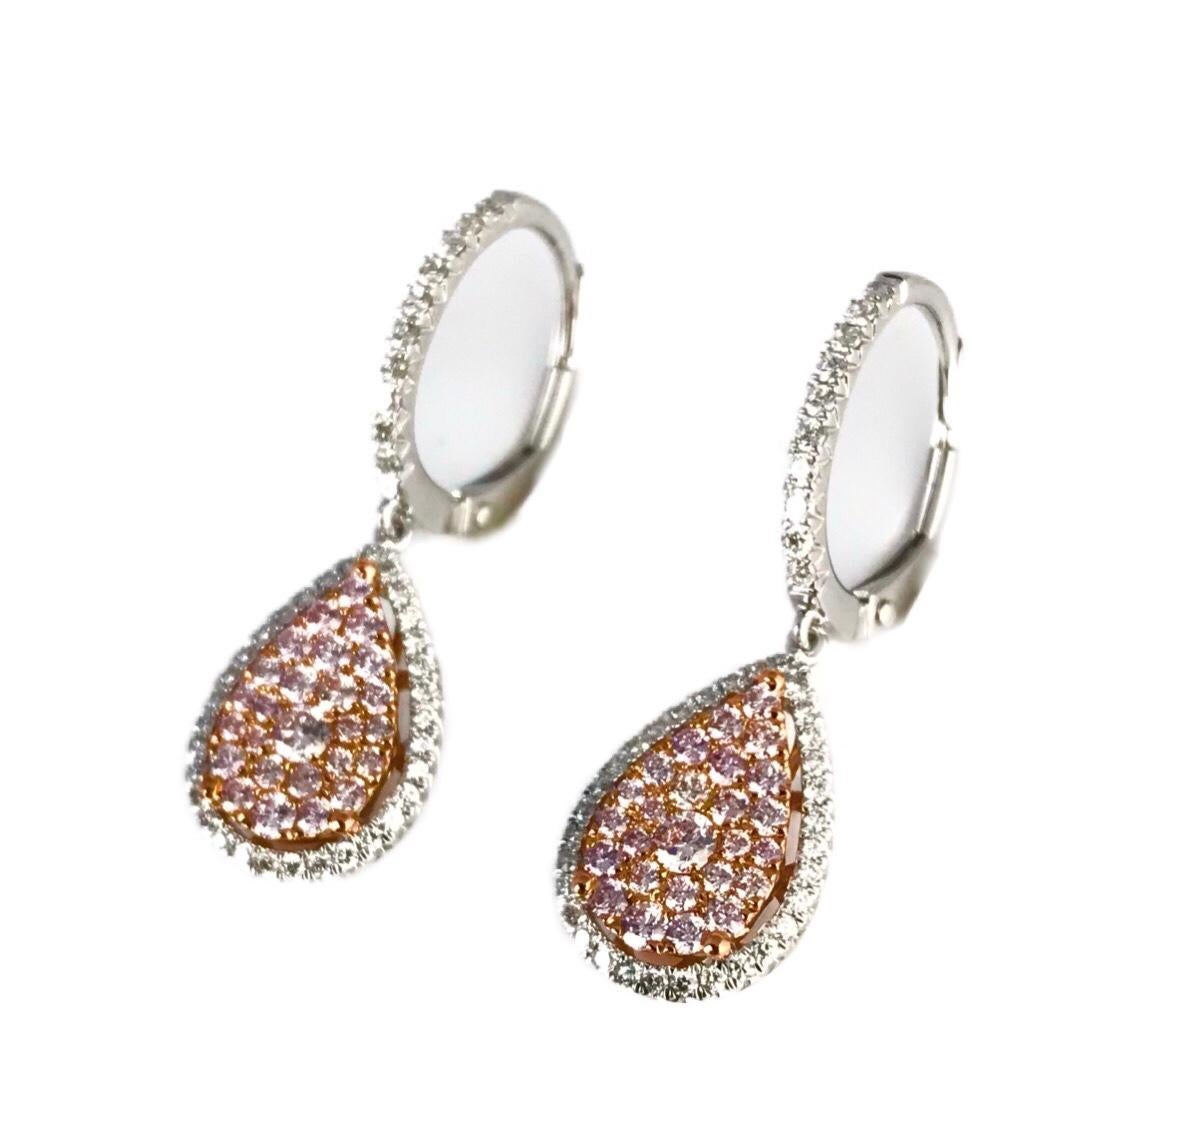 Diese wunderschönen Ohrringe mit Hebelverschluss zeichnen sich durch mehrere runde rosa Diamanten aus, die in einer Birnenform angeordnet sind und sich in einem Halo aus runden weißen Diamanten befinden. Weitere Diamanten zieren die Vorderseite des